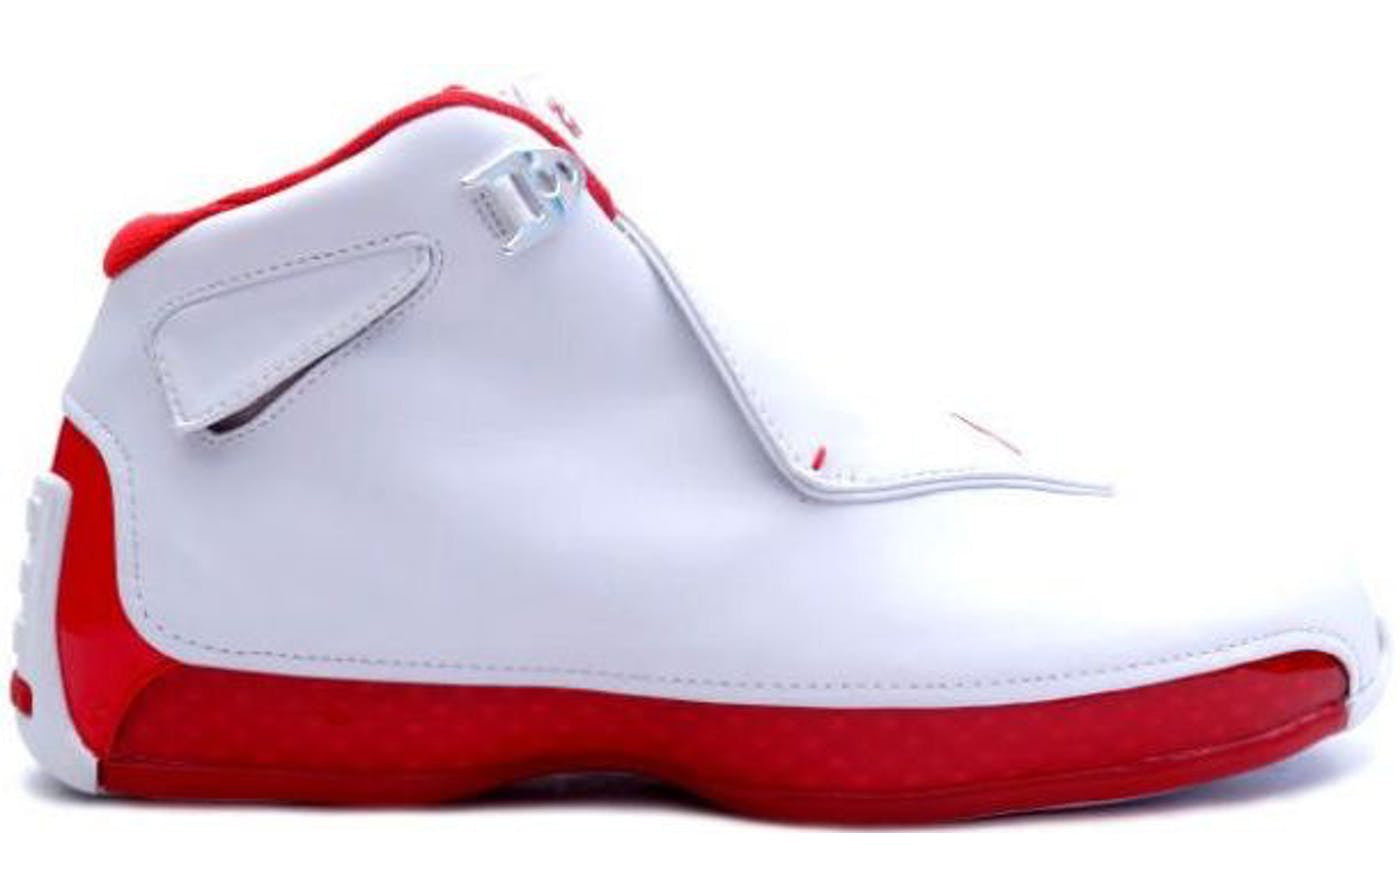 Air Jordan 18 OG \'White Varsity Red\'  305869-161 Iconic Trainers